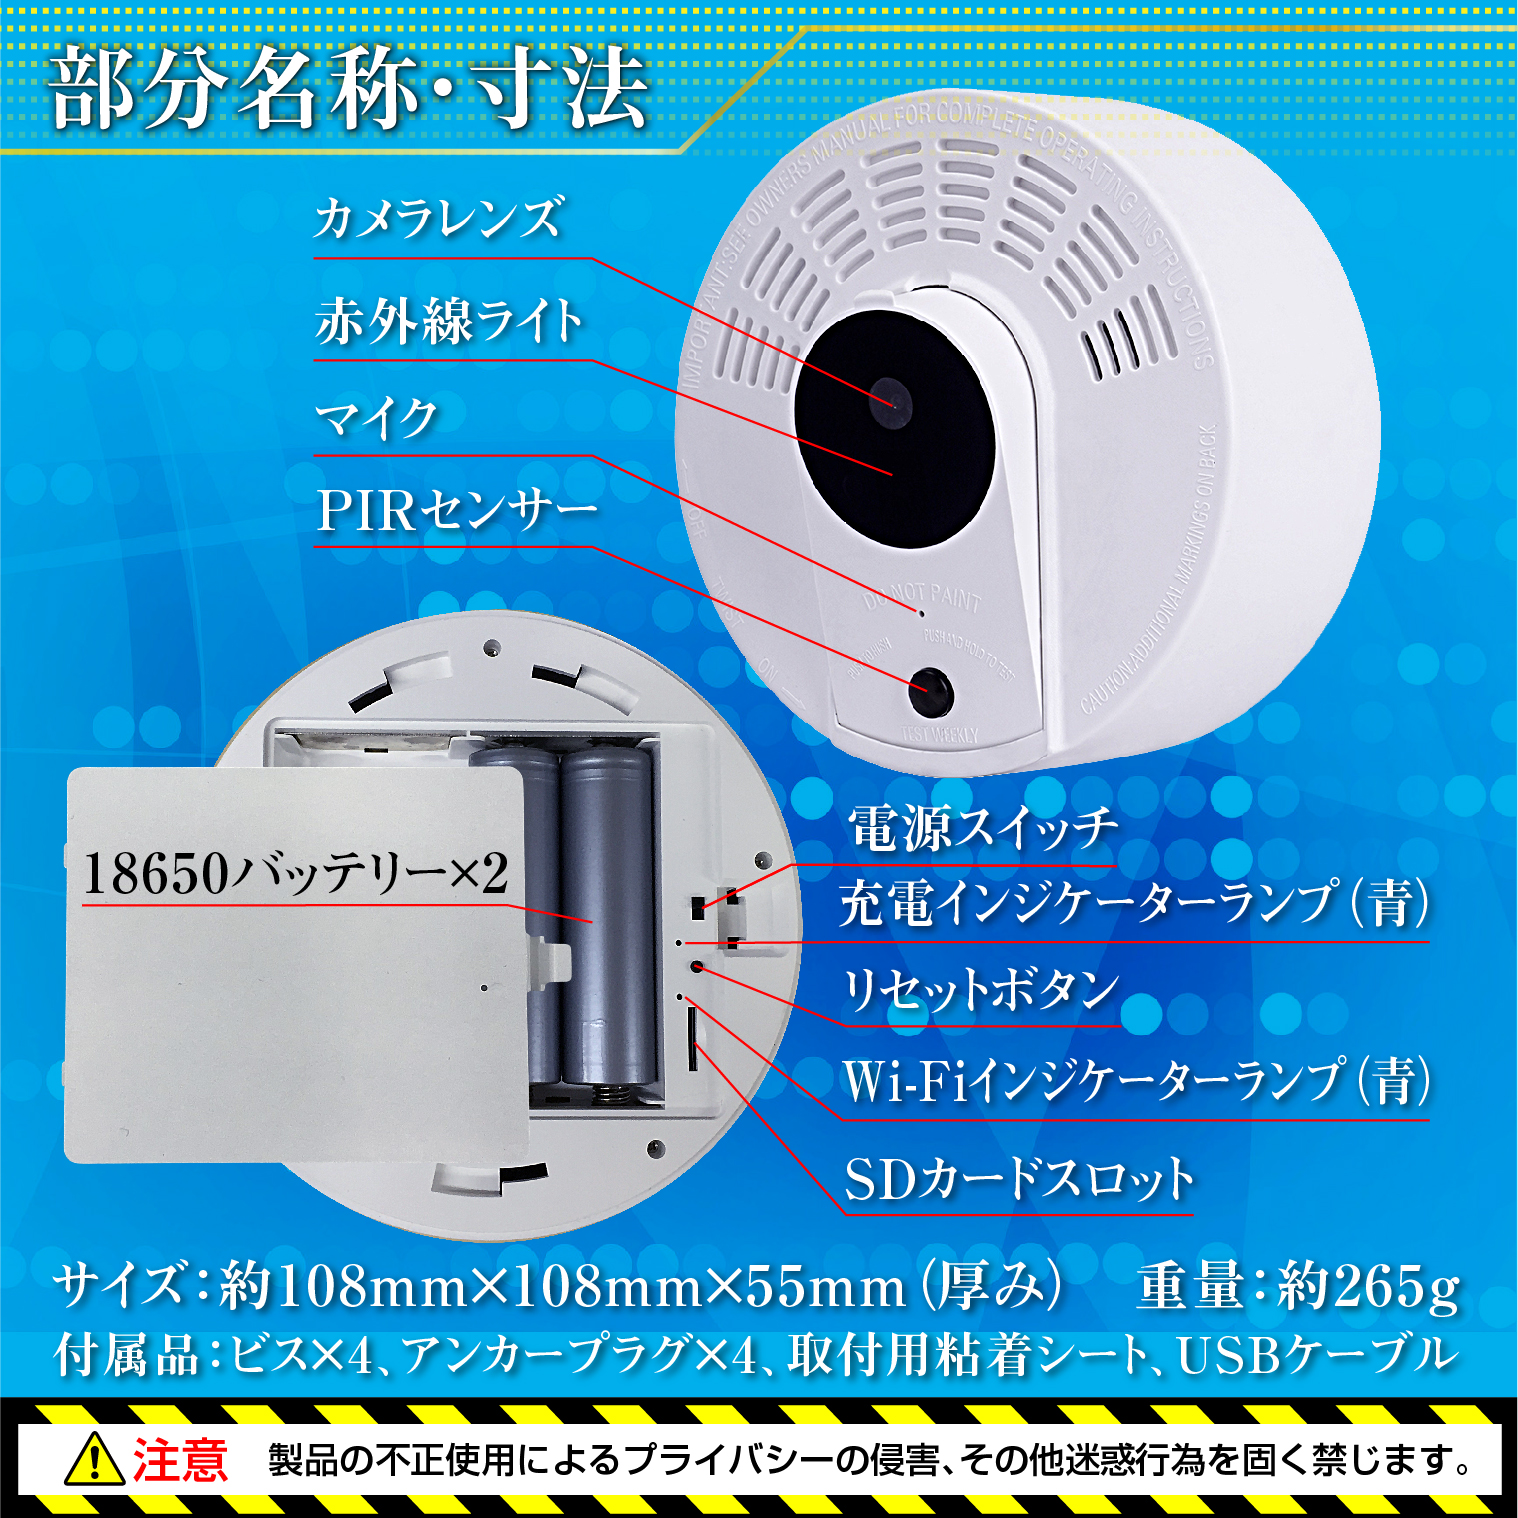 【小型カメラ】火災報知器型カメラ Ceiling-move　シーリングムーブ『TK-CEL-04』